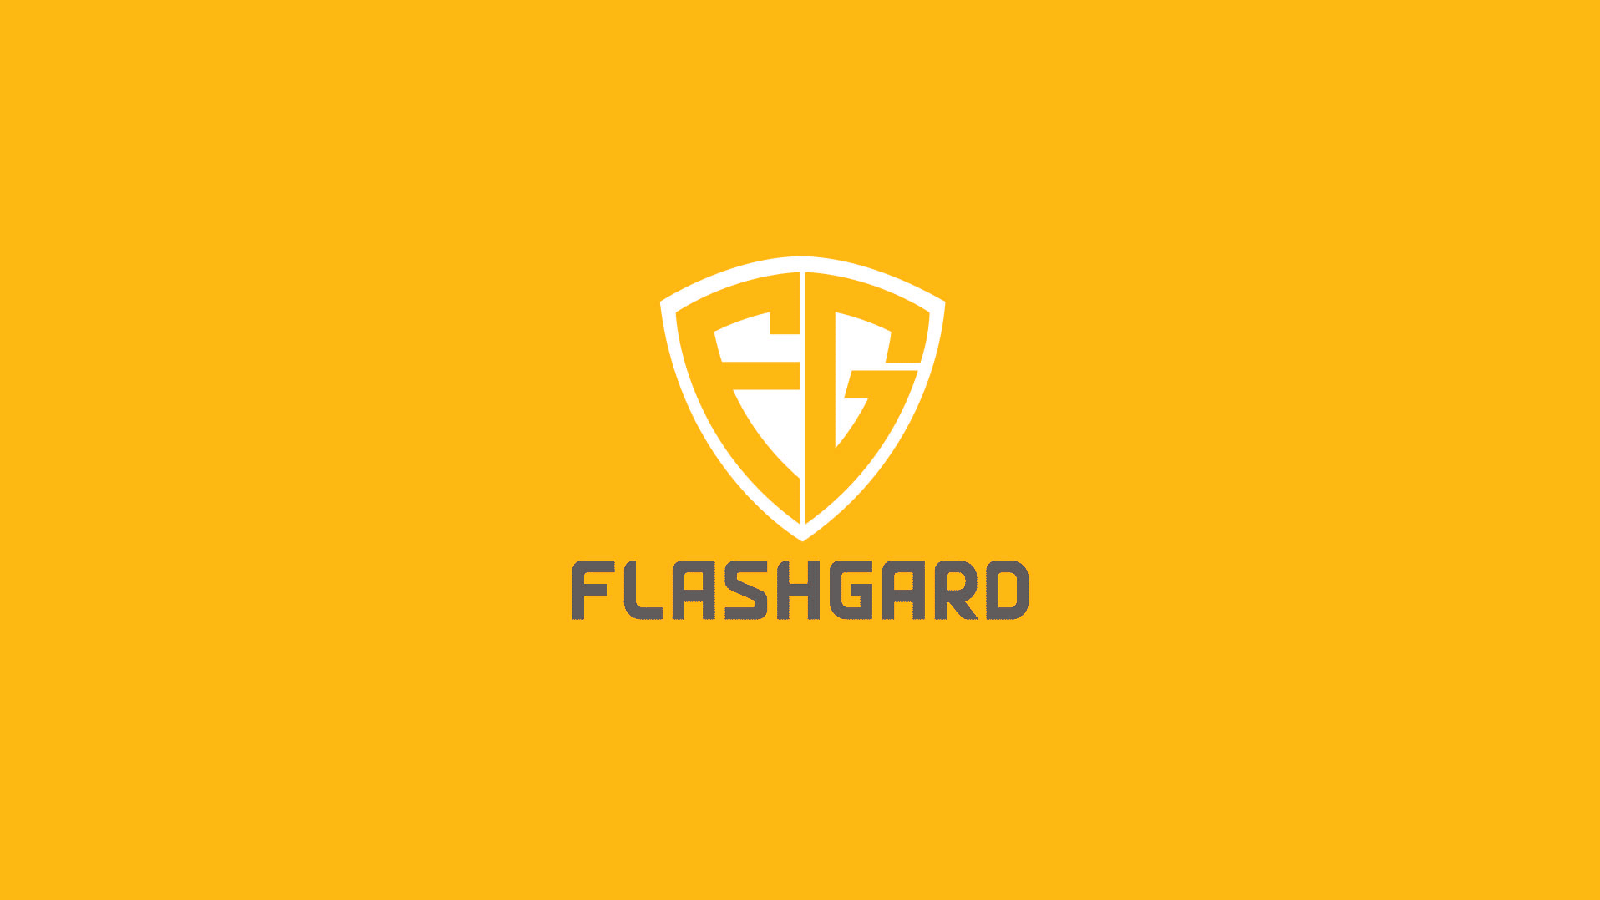 FlashGard